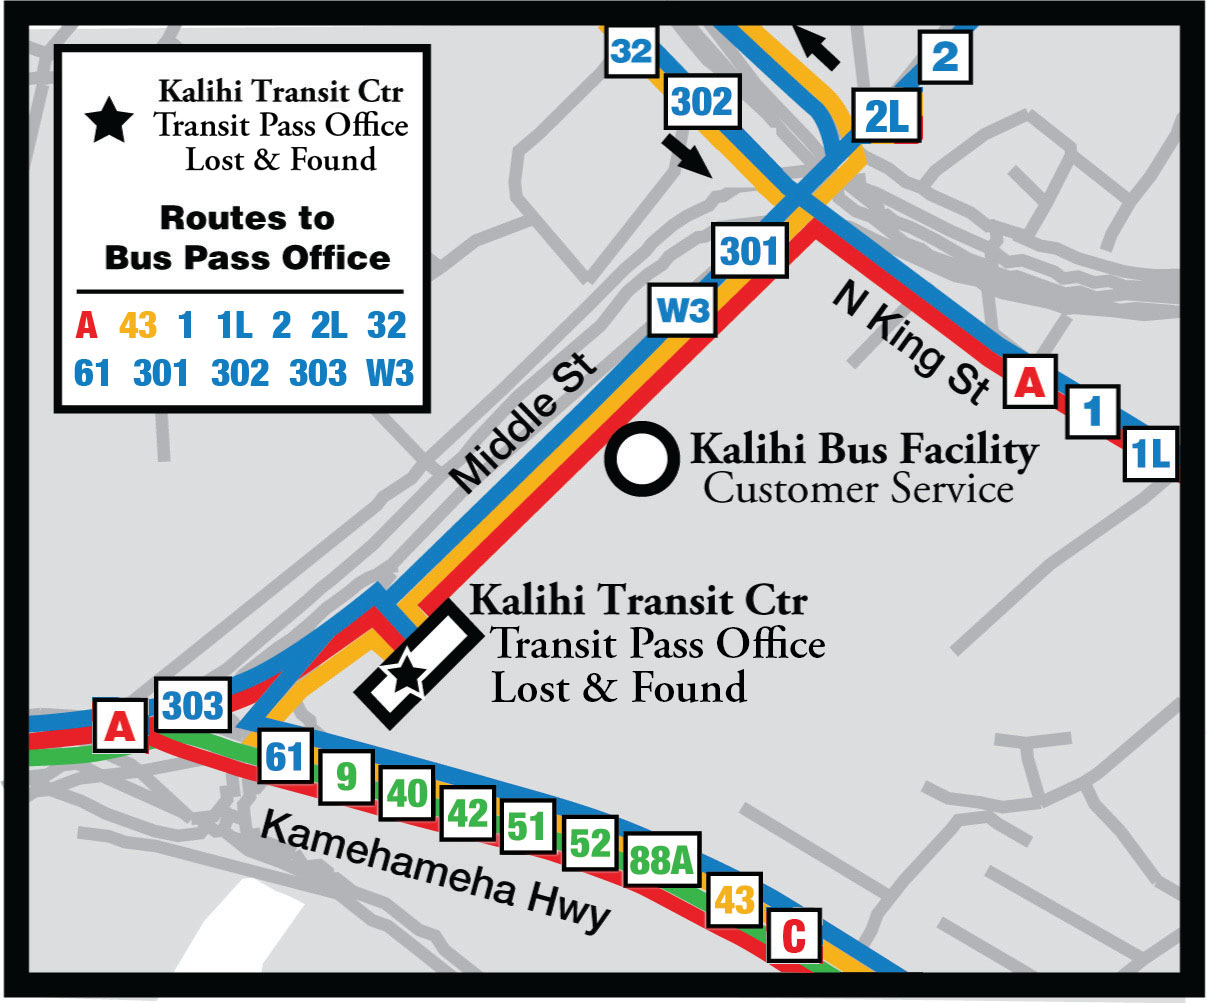 Kalihi Transit Facility Map